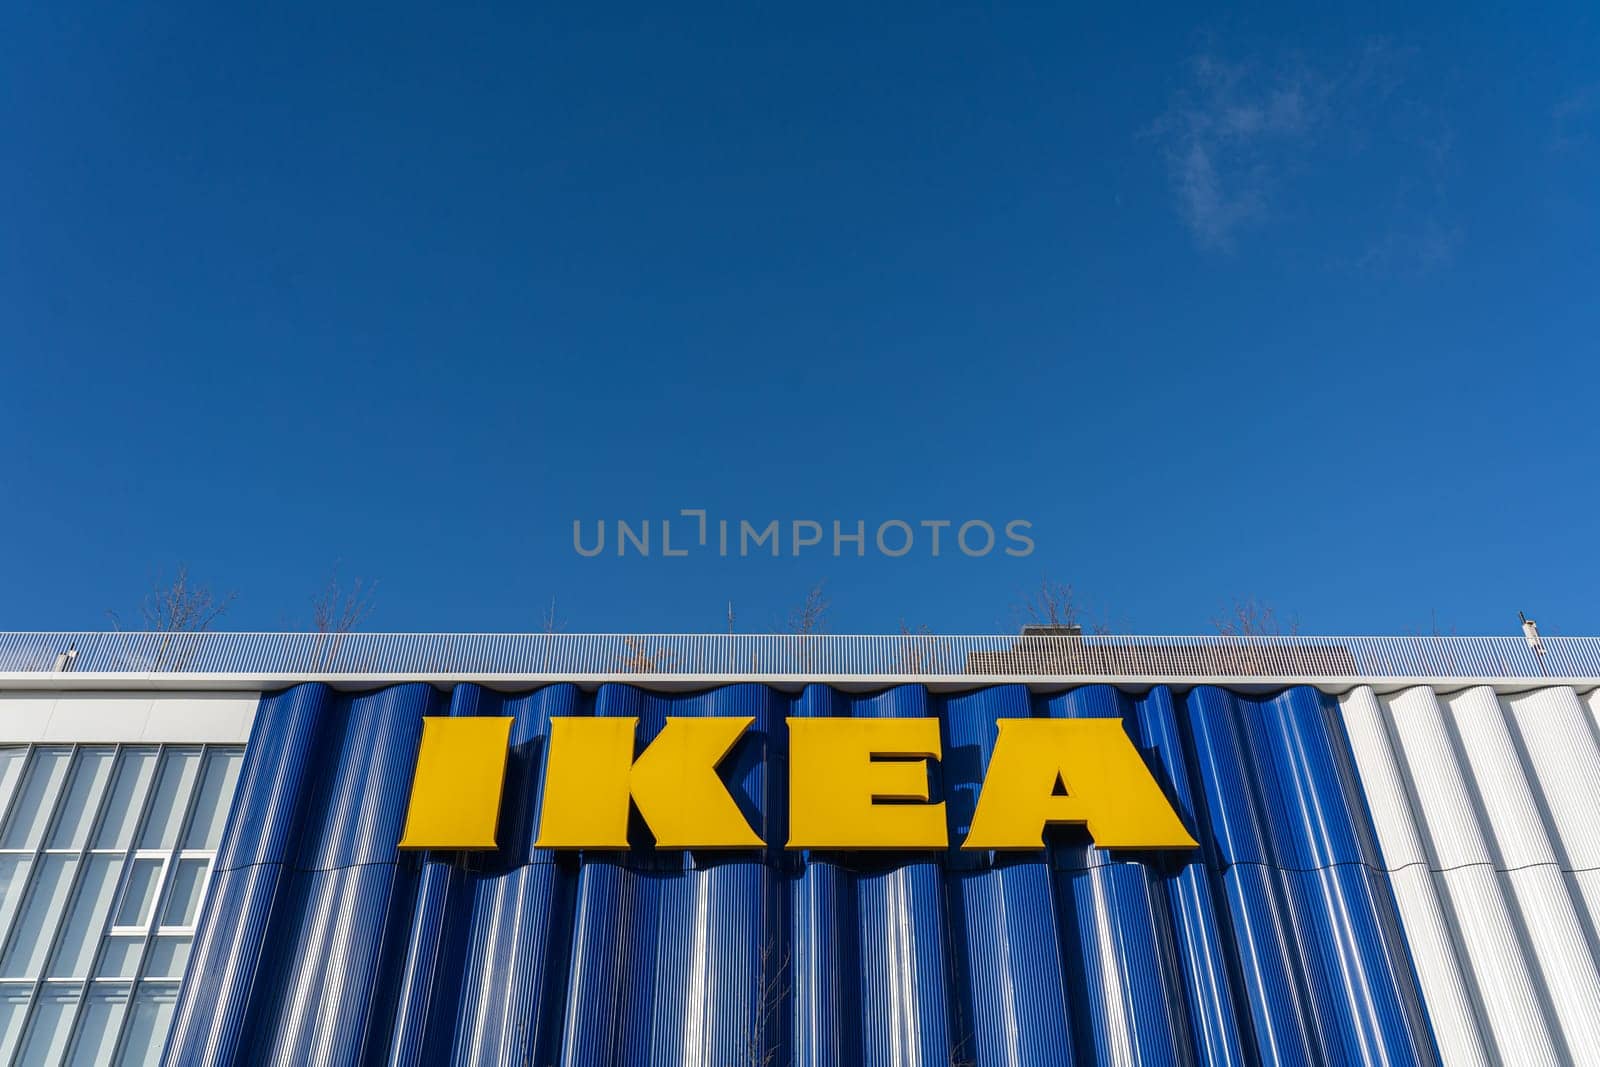 IKEA Store in Copenhagen, Denmark by oliverfoerstner